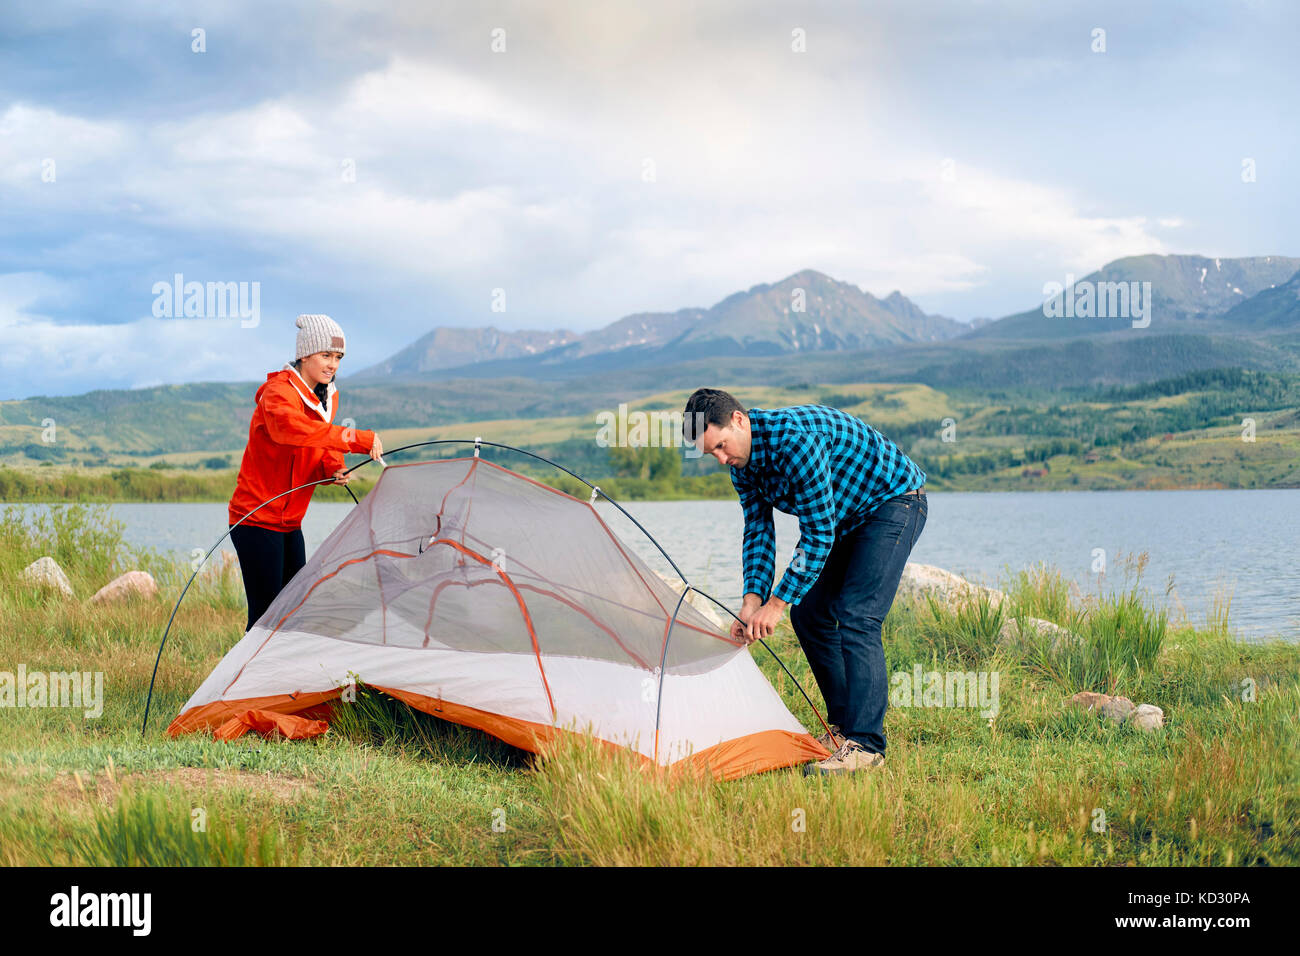 Paar in ländlicher Umgebung, Zelt, Heeney, Colorado, United States Stockfoto